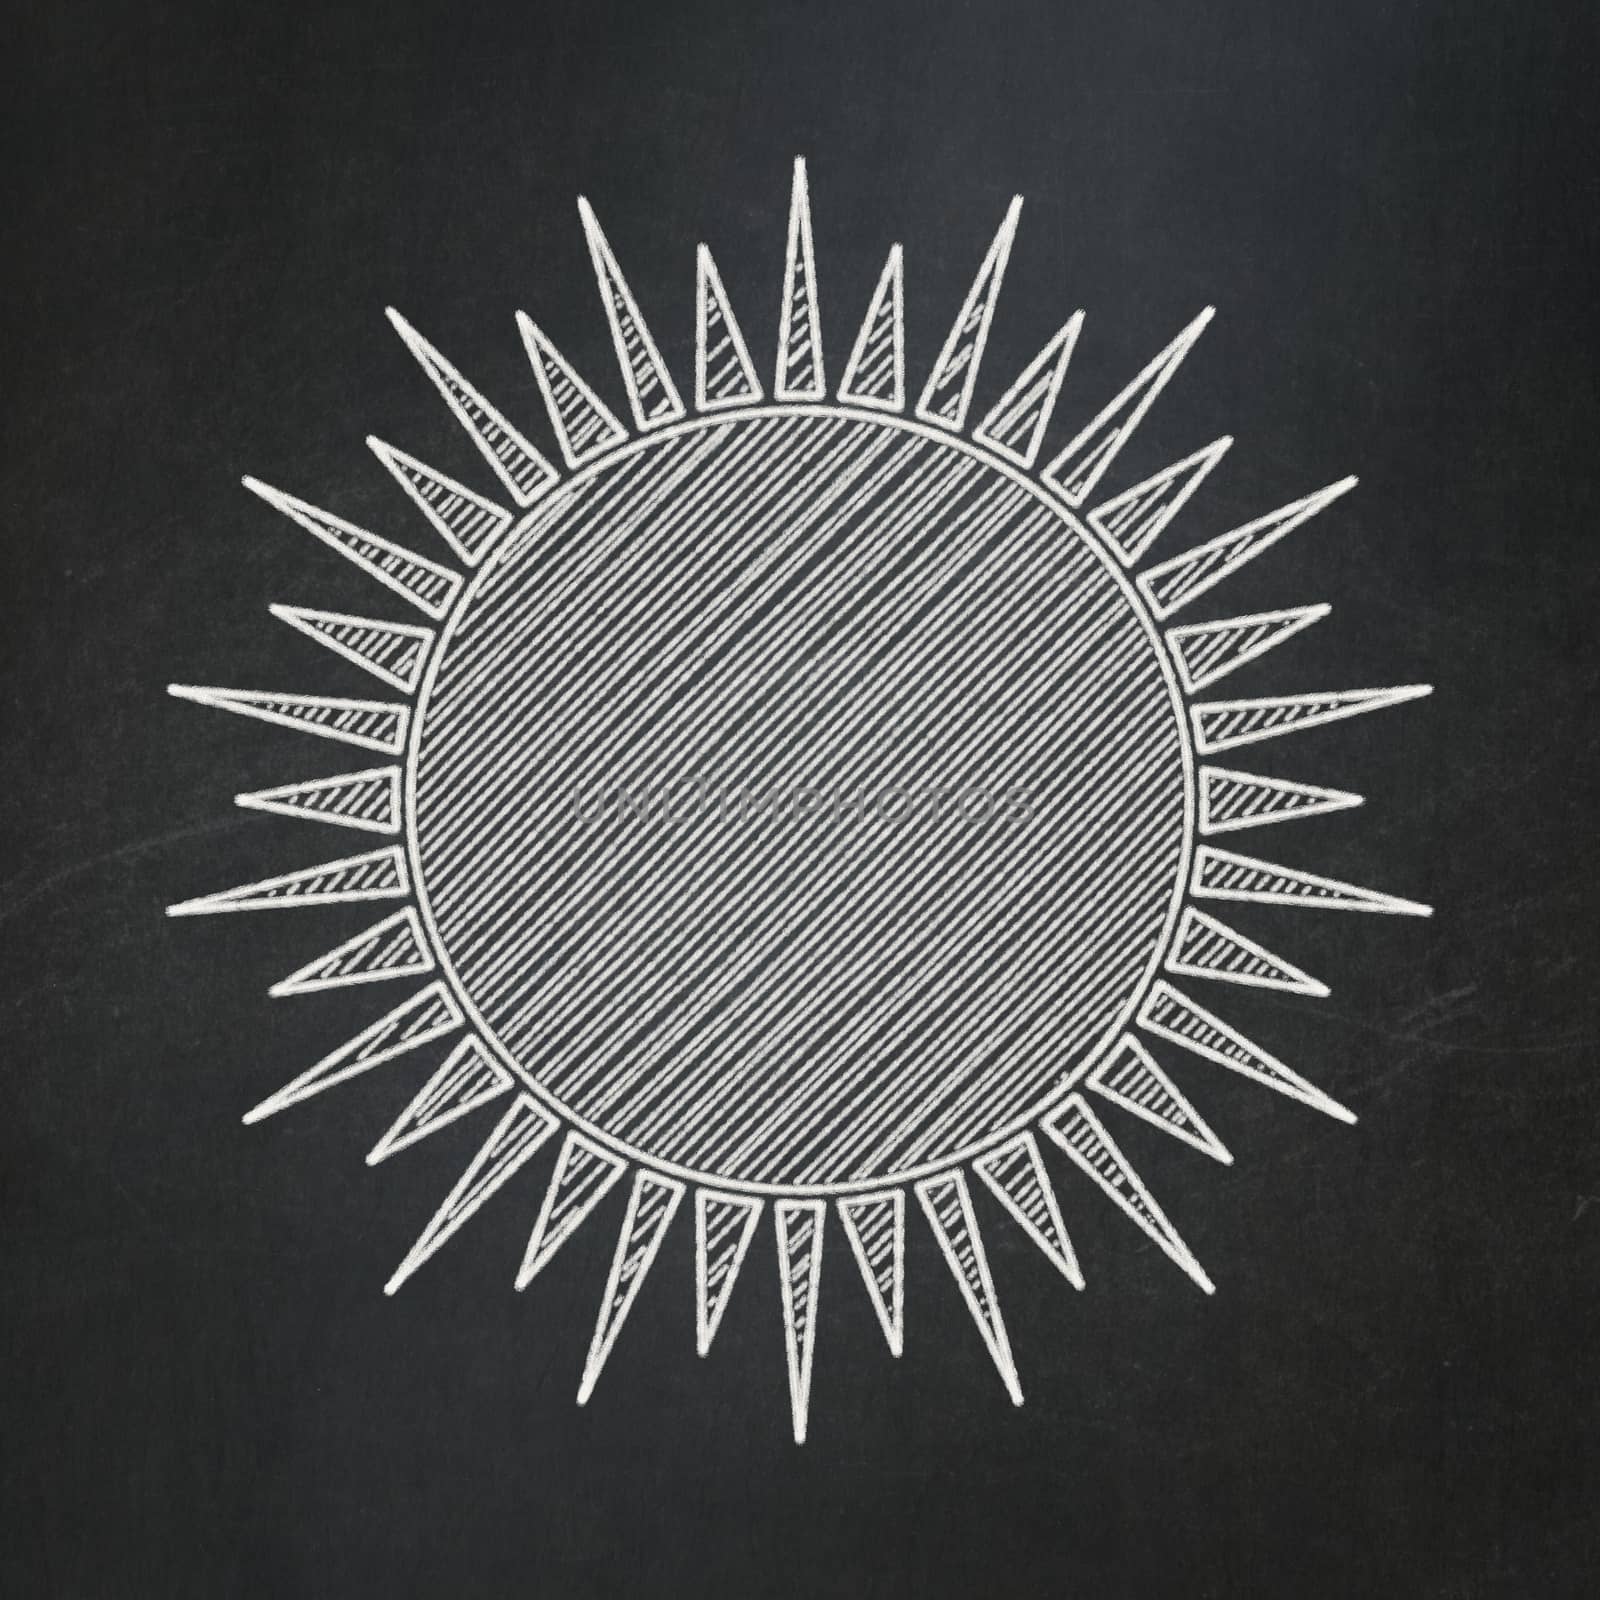 Vacation concept: Sun on chalkboard background by maxkabakov